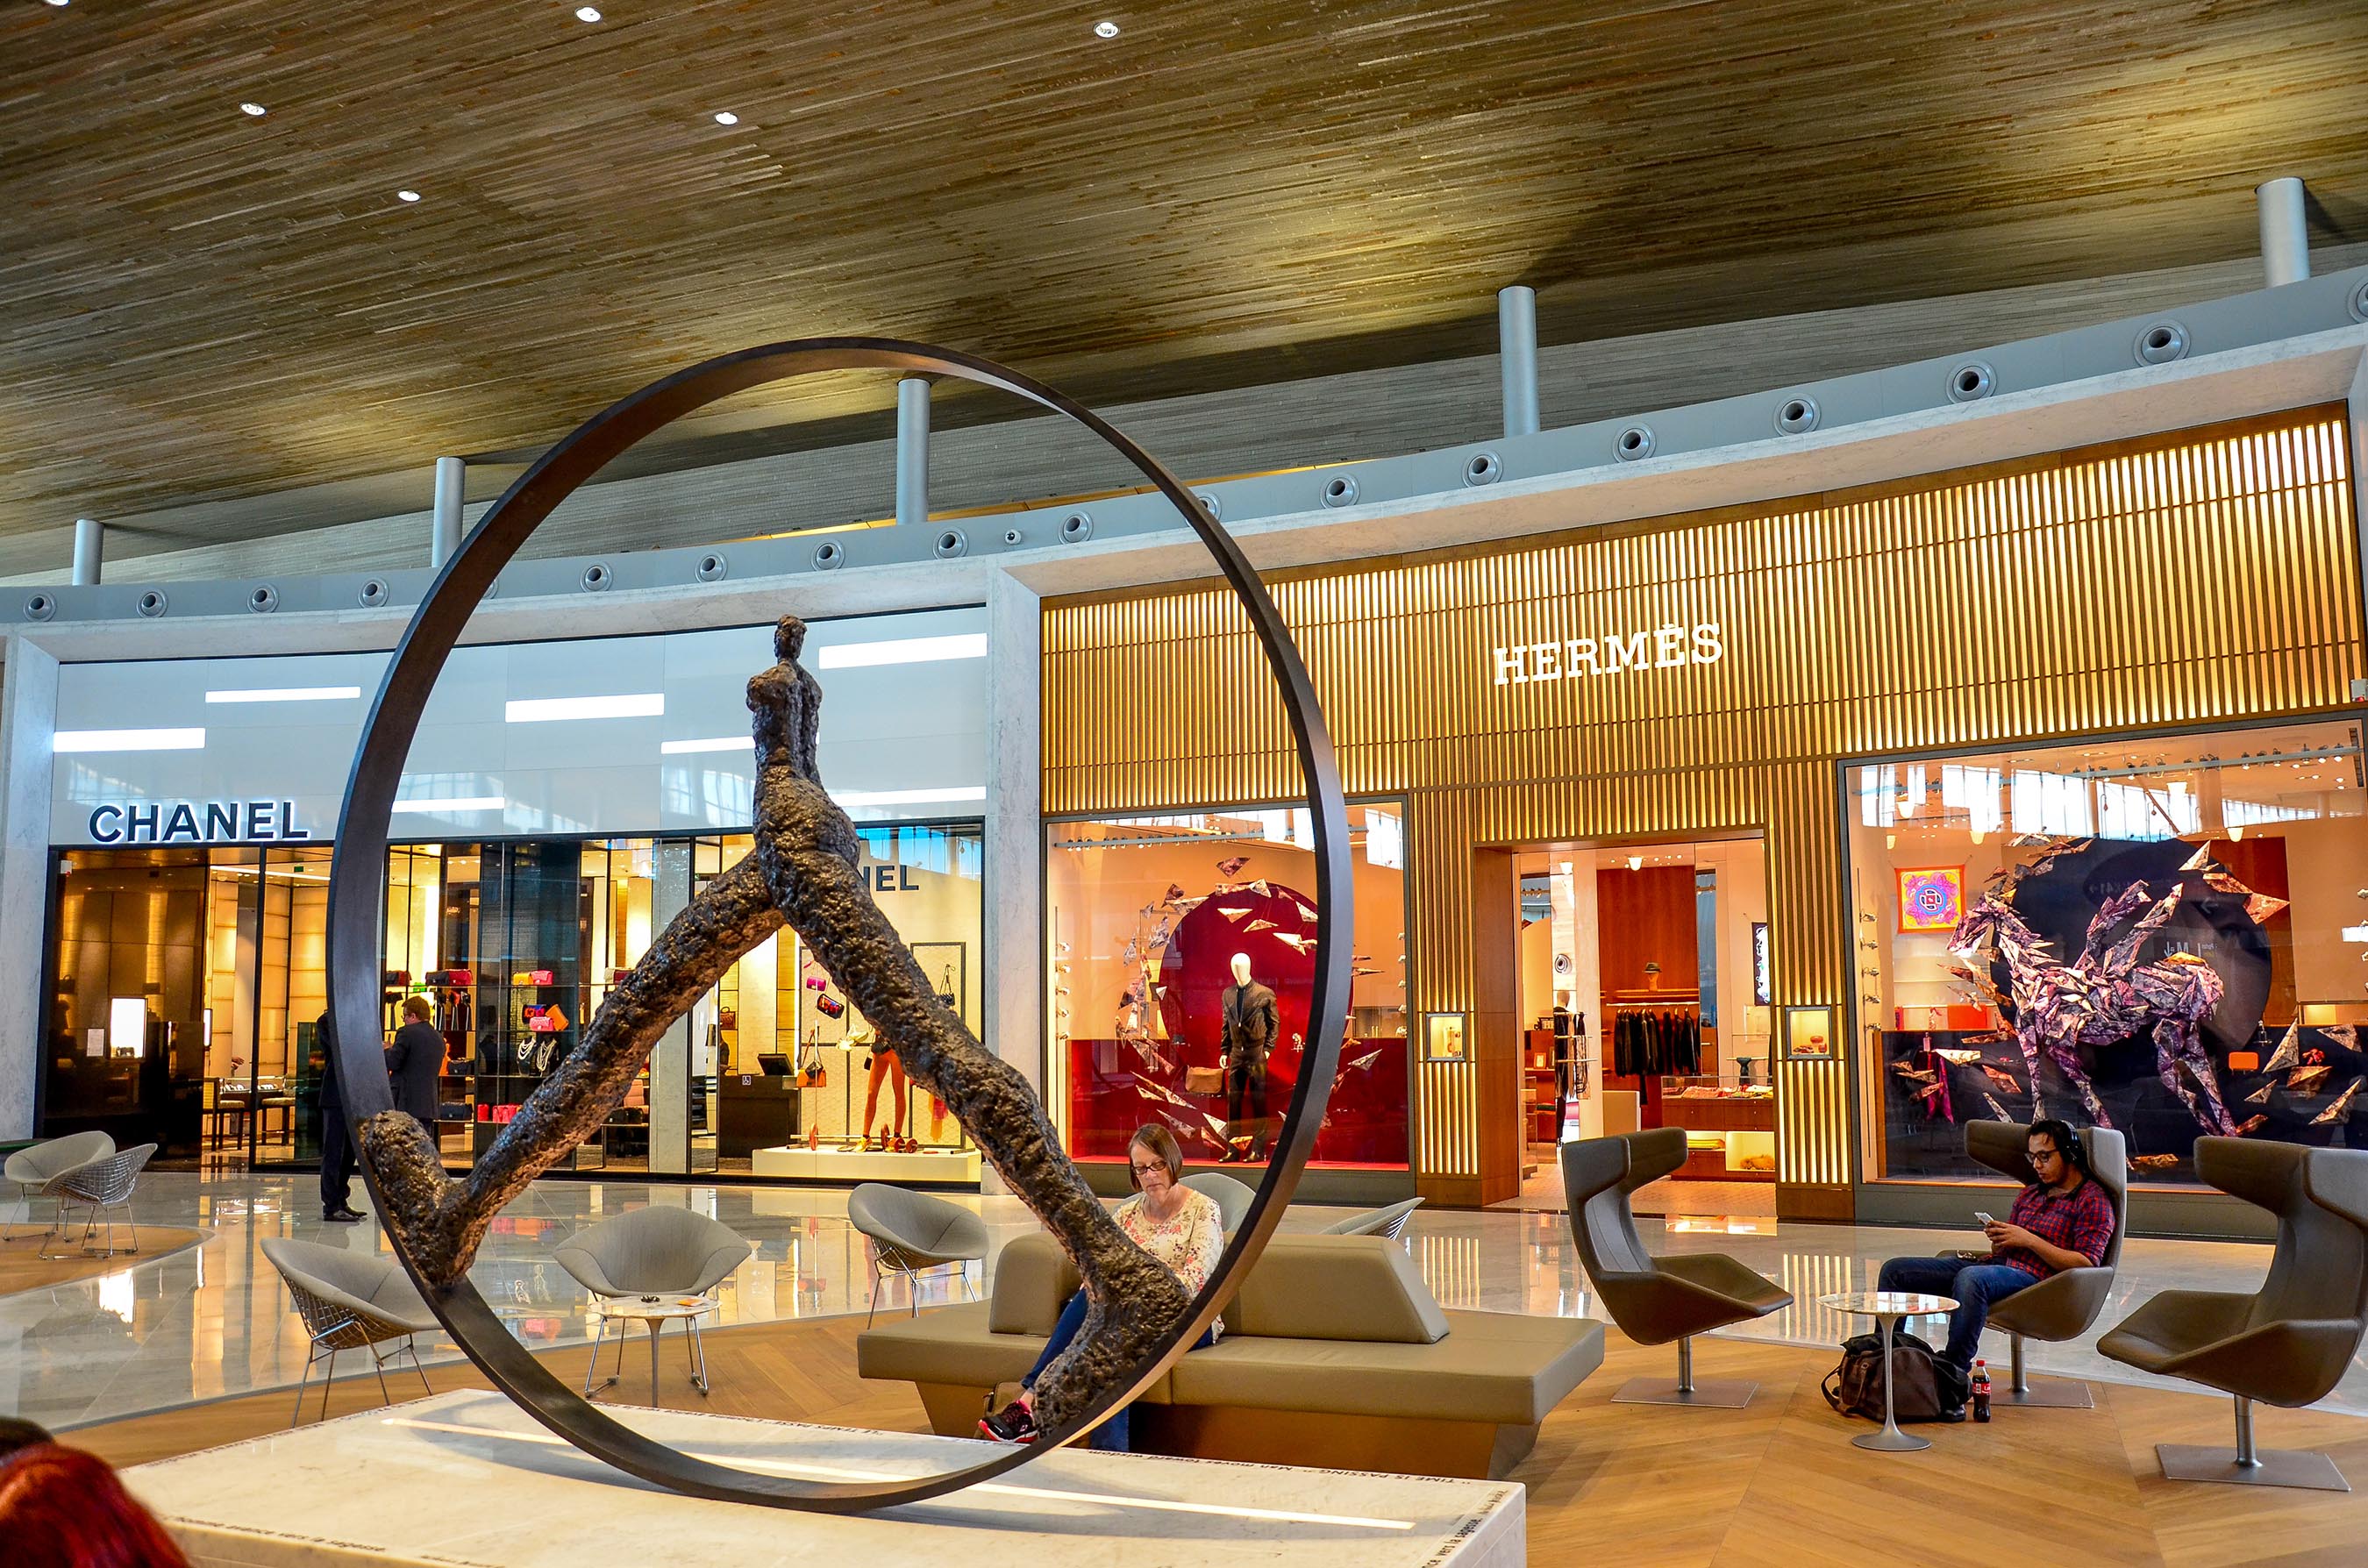 Aéroports de Paris has unveiled four new world-class shops